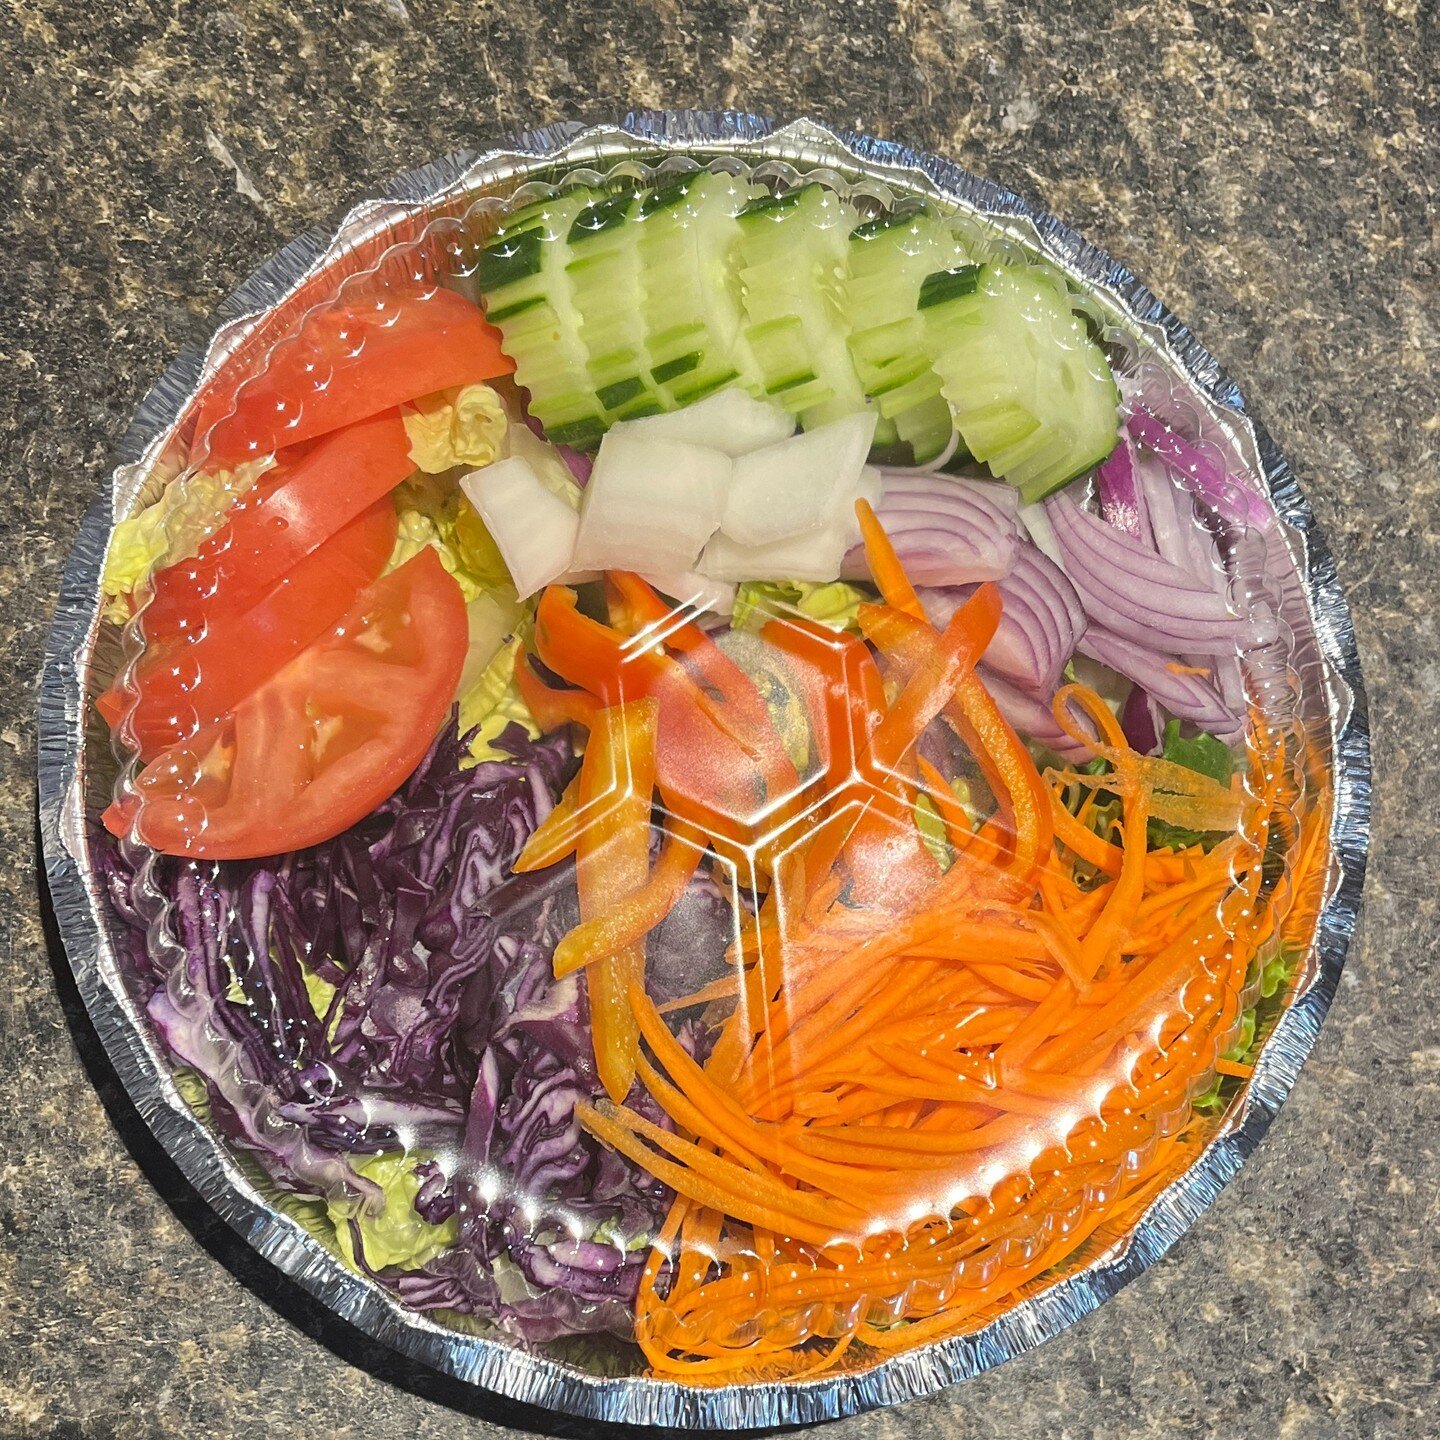 Garden Salad #thai #thaifood #neparestaurants #togo #thaicuisine #pittston #Pittstonfood #wilkesbarre #thaicuisine #salad #vegetarian #freshfood